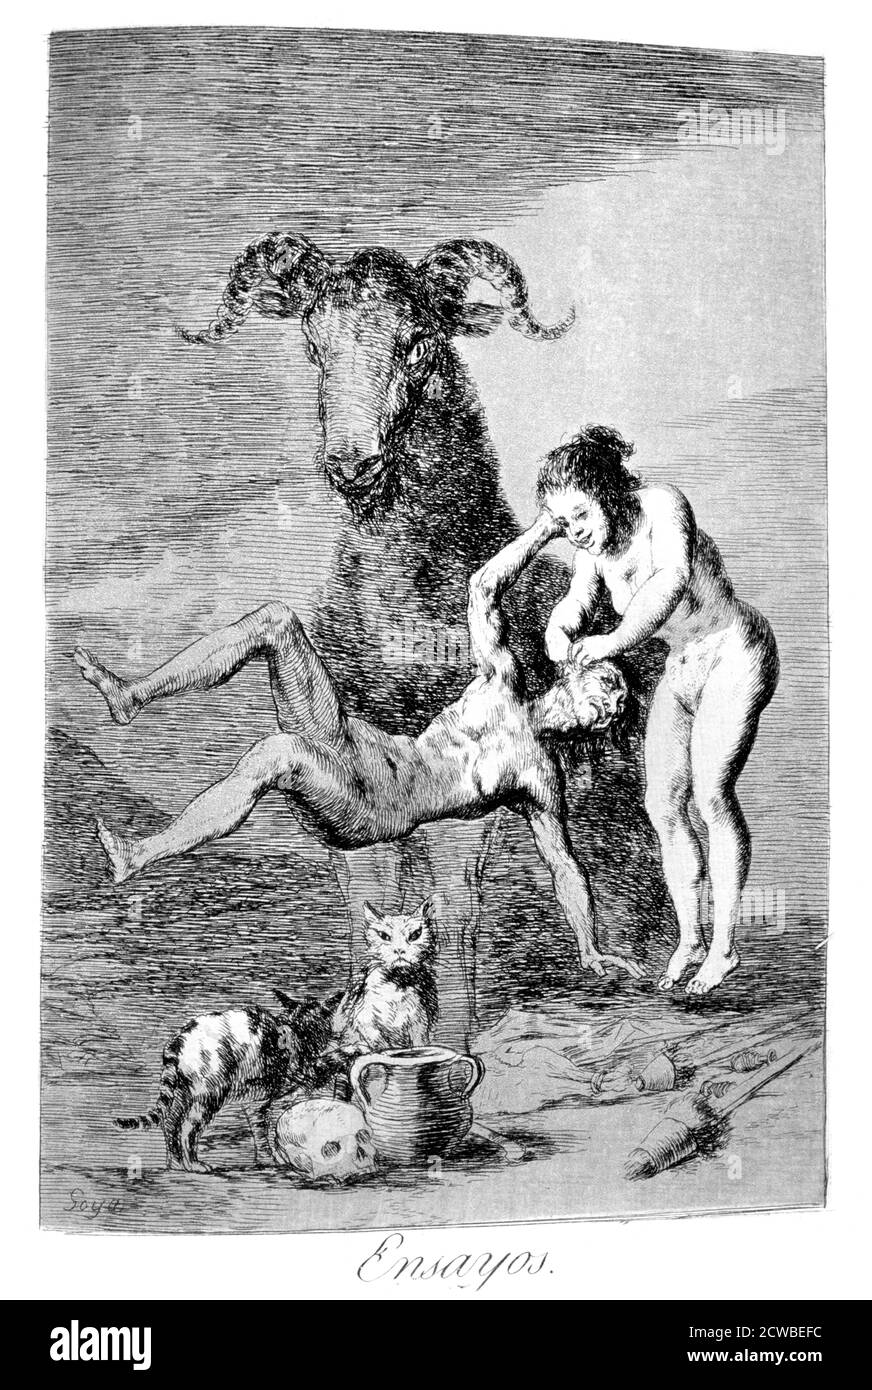 Trials', 1799 Künstler: Francisco Goya. Platte 60 von 'Los Caprichos'. Los Caprichos sind ein Satz von 80 Drucken in Aquatinta und Radierung, die der spanische Künstler Francisco Goya 1797 und 1798 schuf und 1799 als Album veröffentlicht wurde. Stockfoto